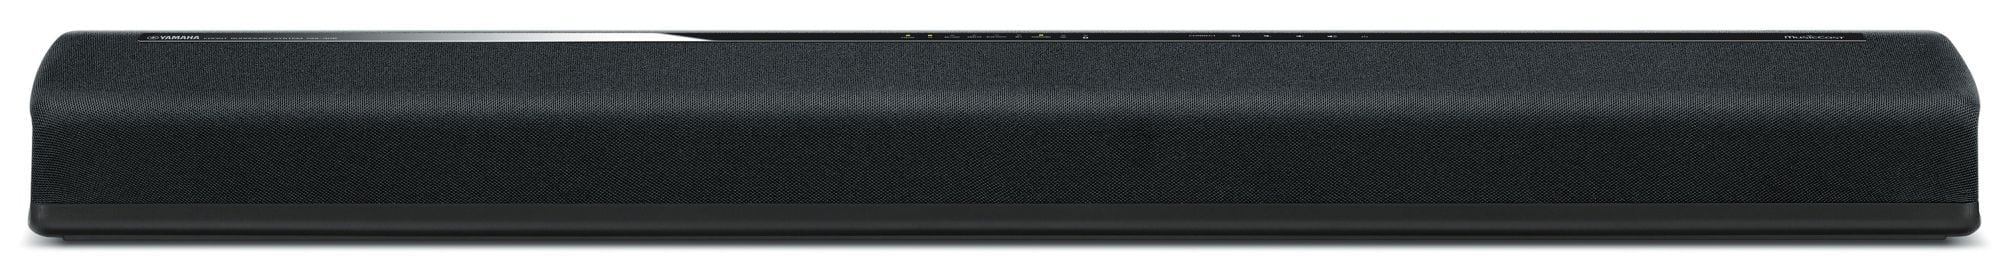 Yamaha YAS-306 zwart - Soundbar